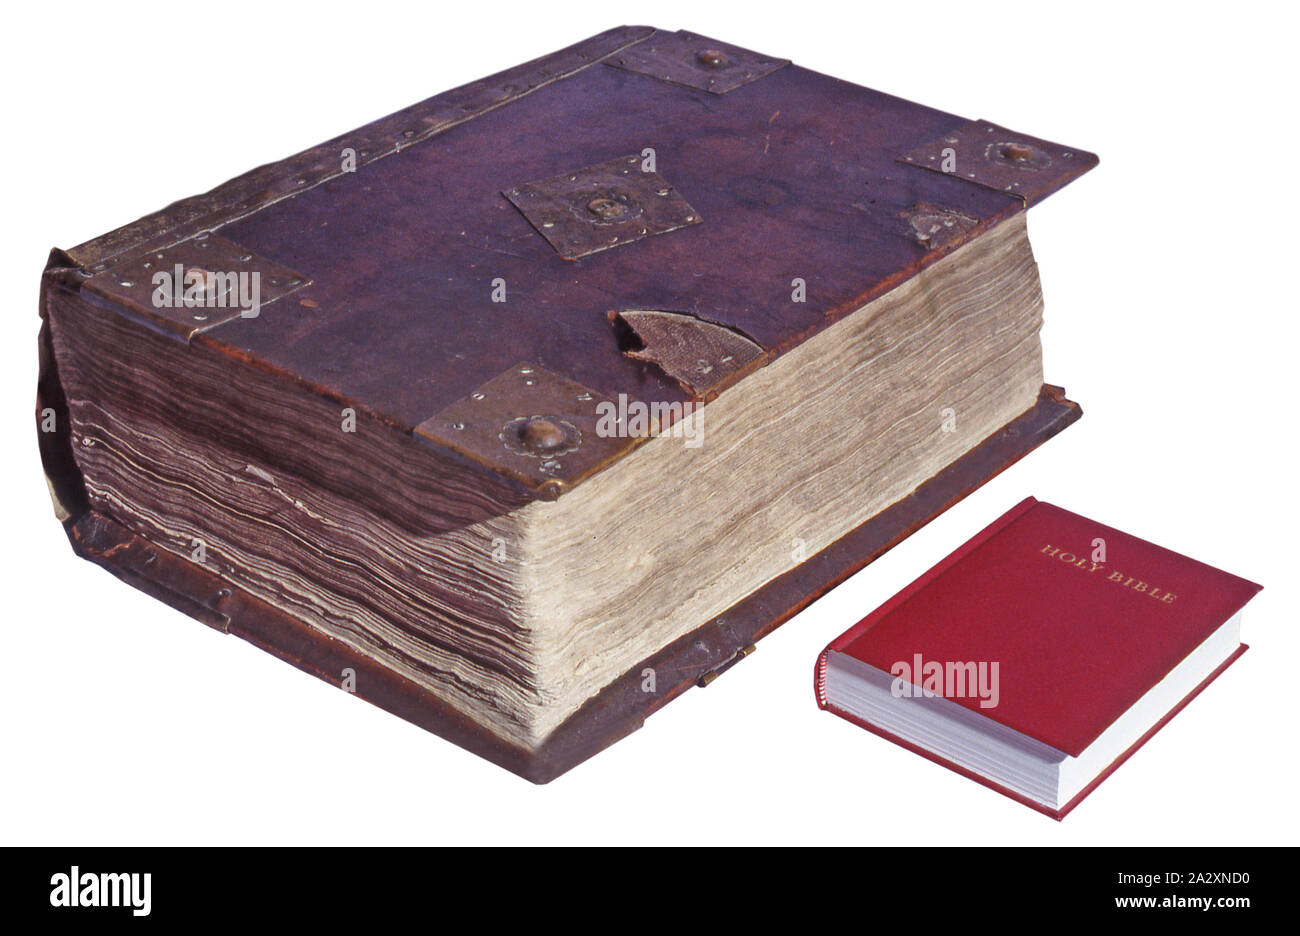 Primera edición de la Biblia King James 1611 con una edición moderna que muestra la diferencia en tamaño Foto de stock